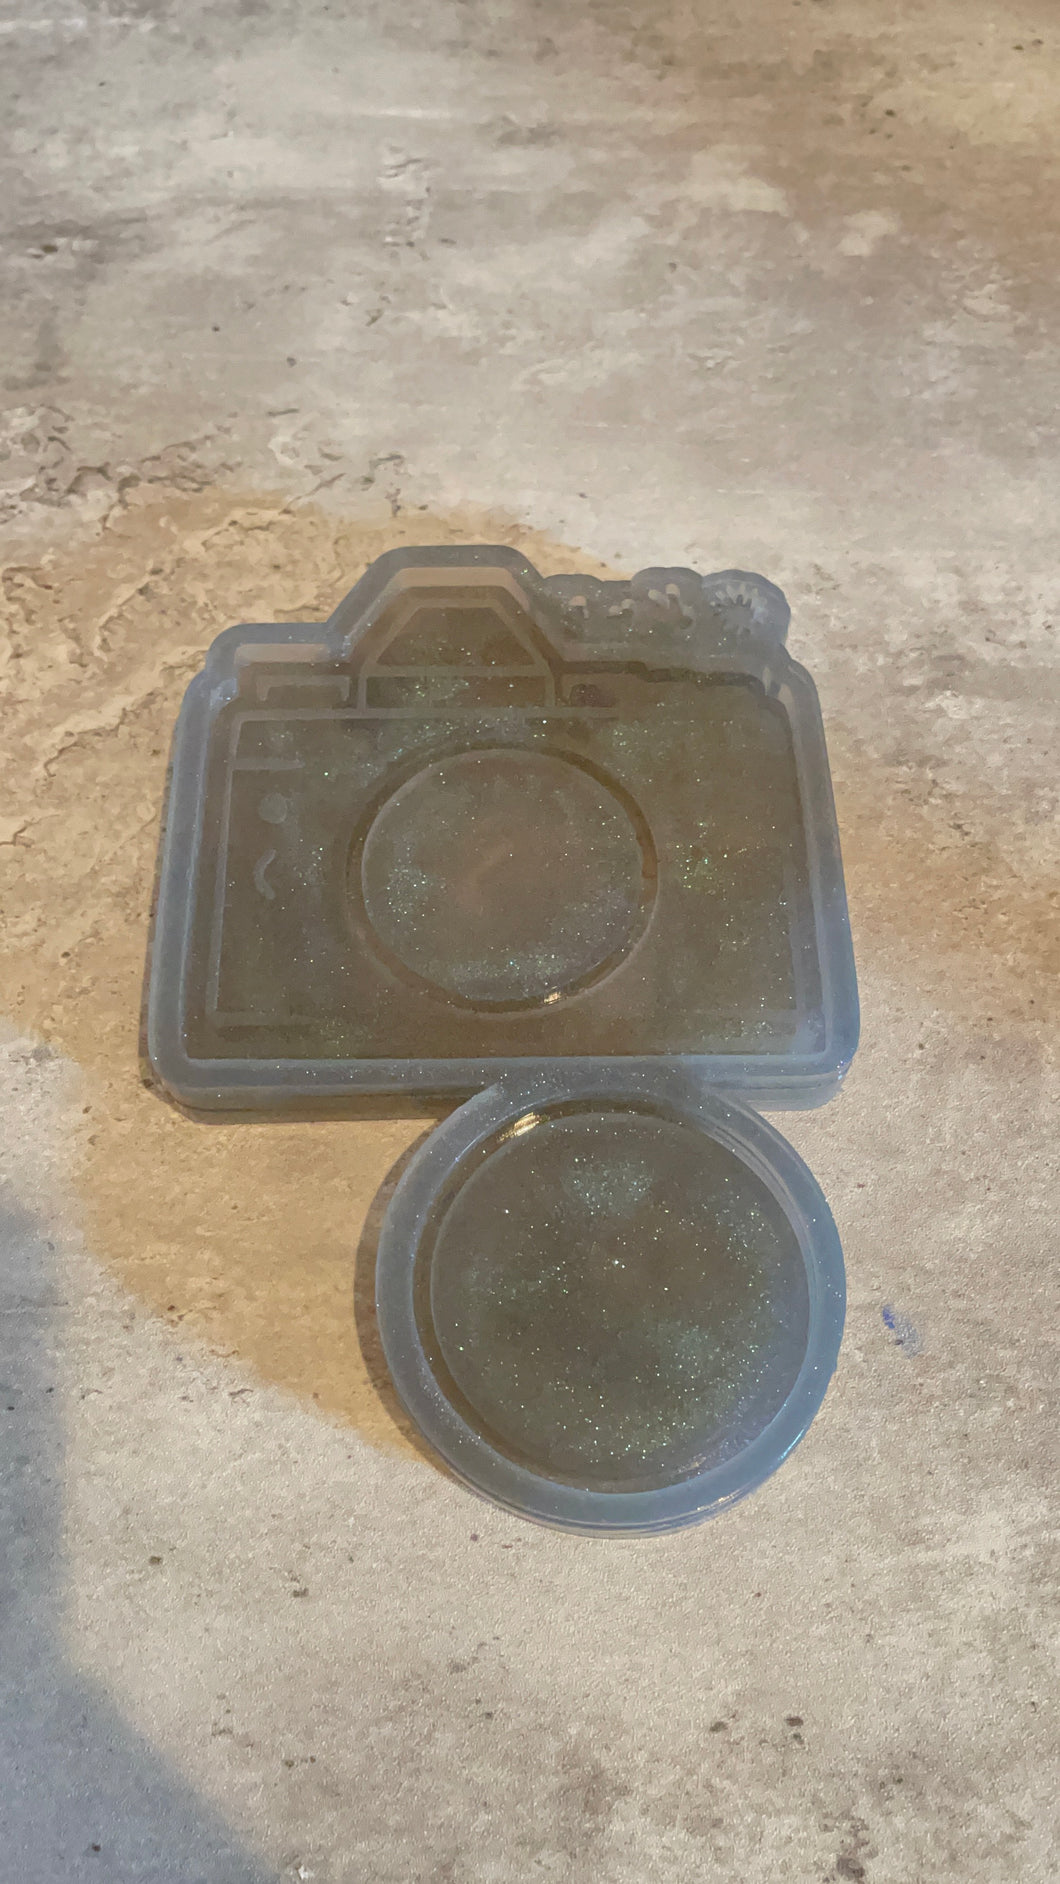 Camera Shaker Silicone Mold